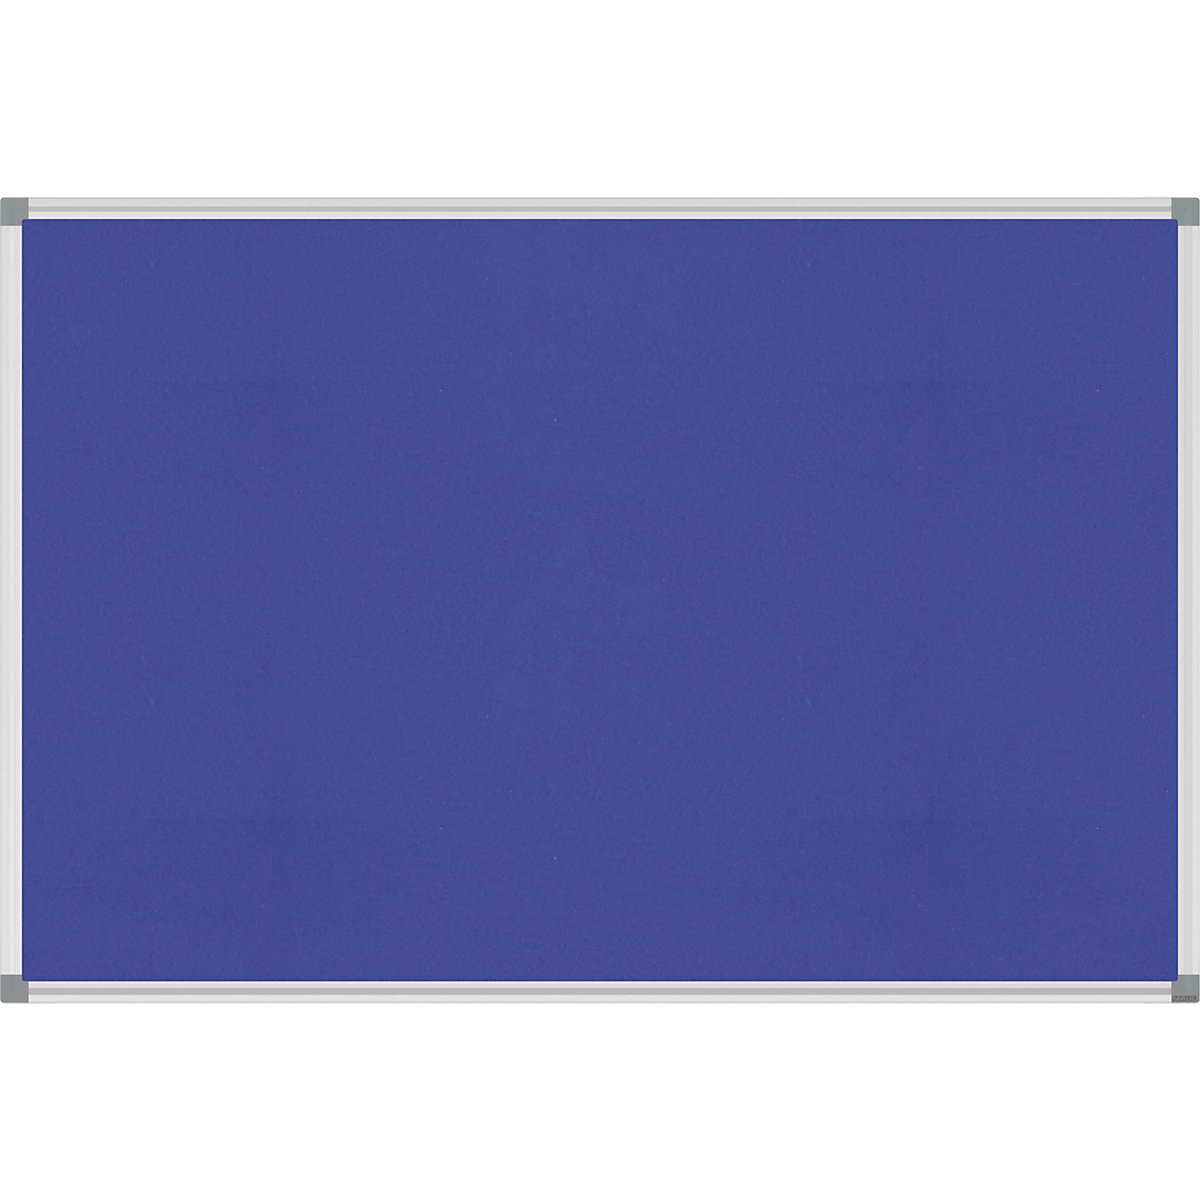 MAUL Pinnboard STANDARD, stabil, Textil, blau, BxH 900 x 600 mm